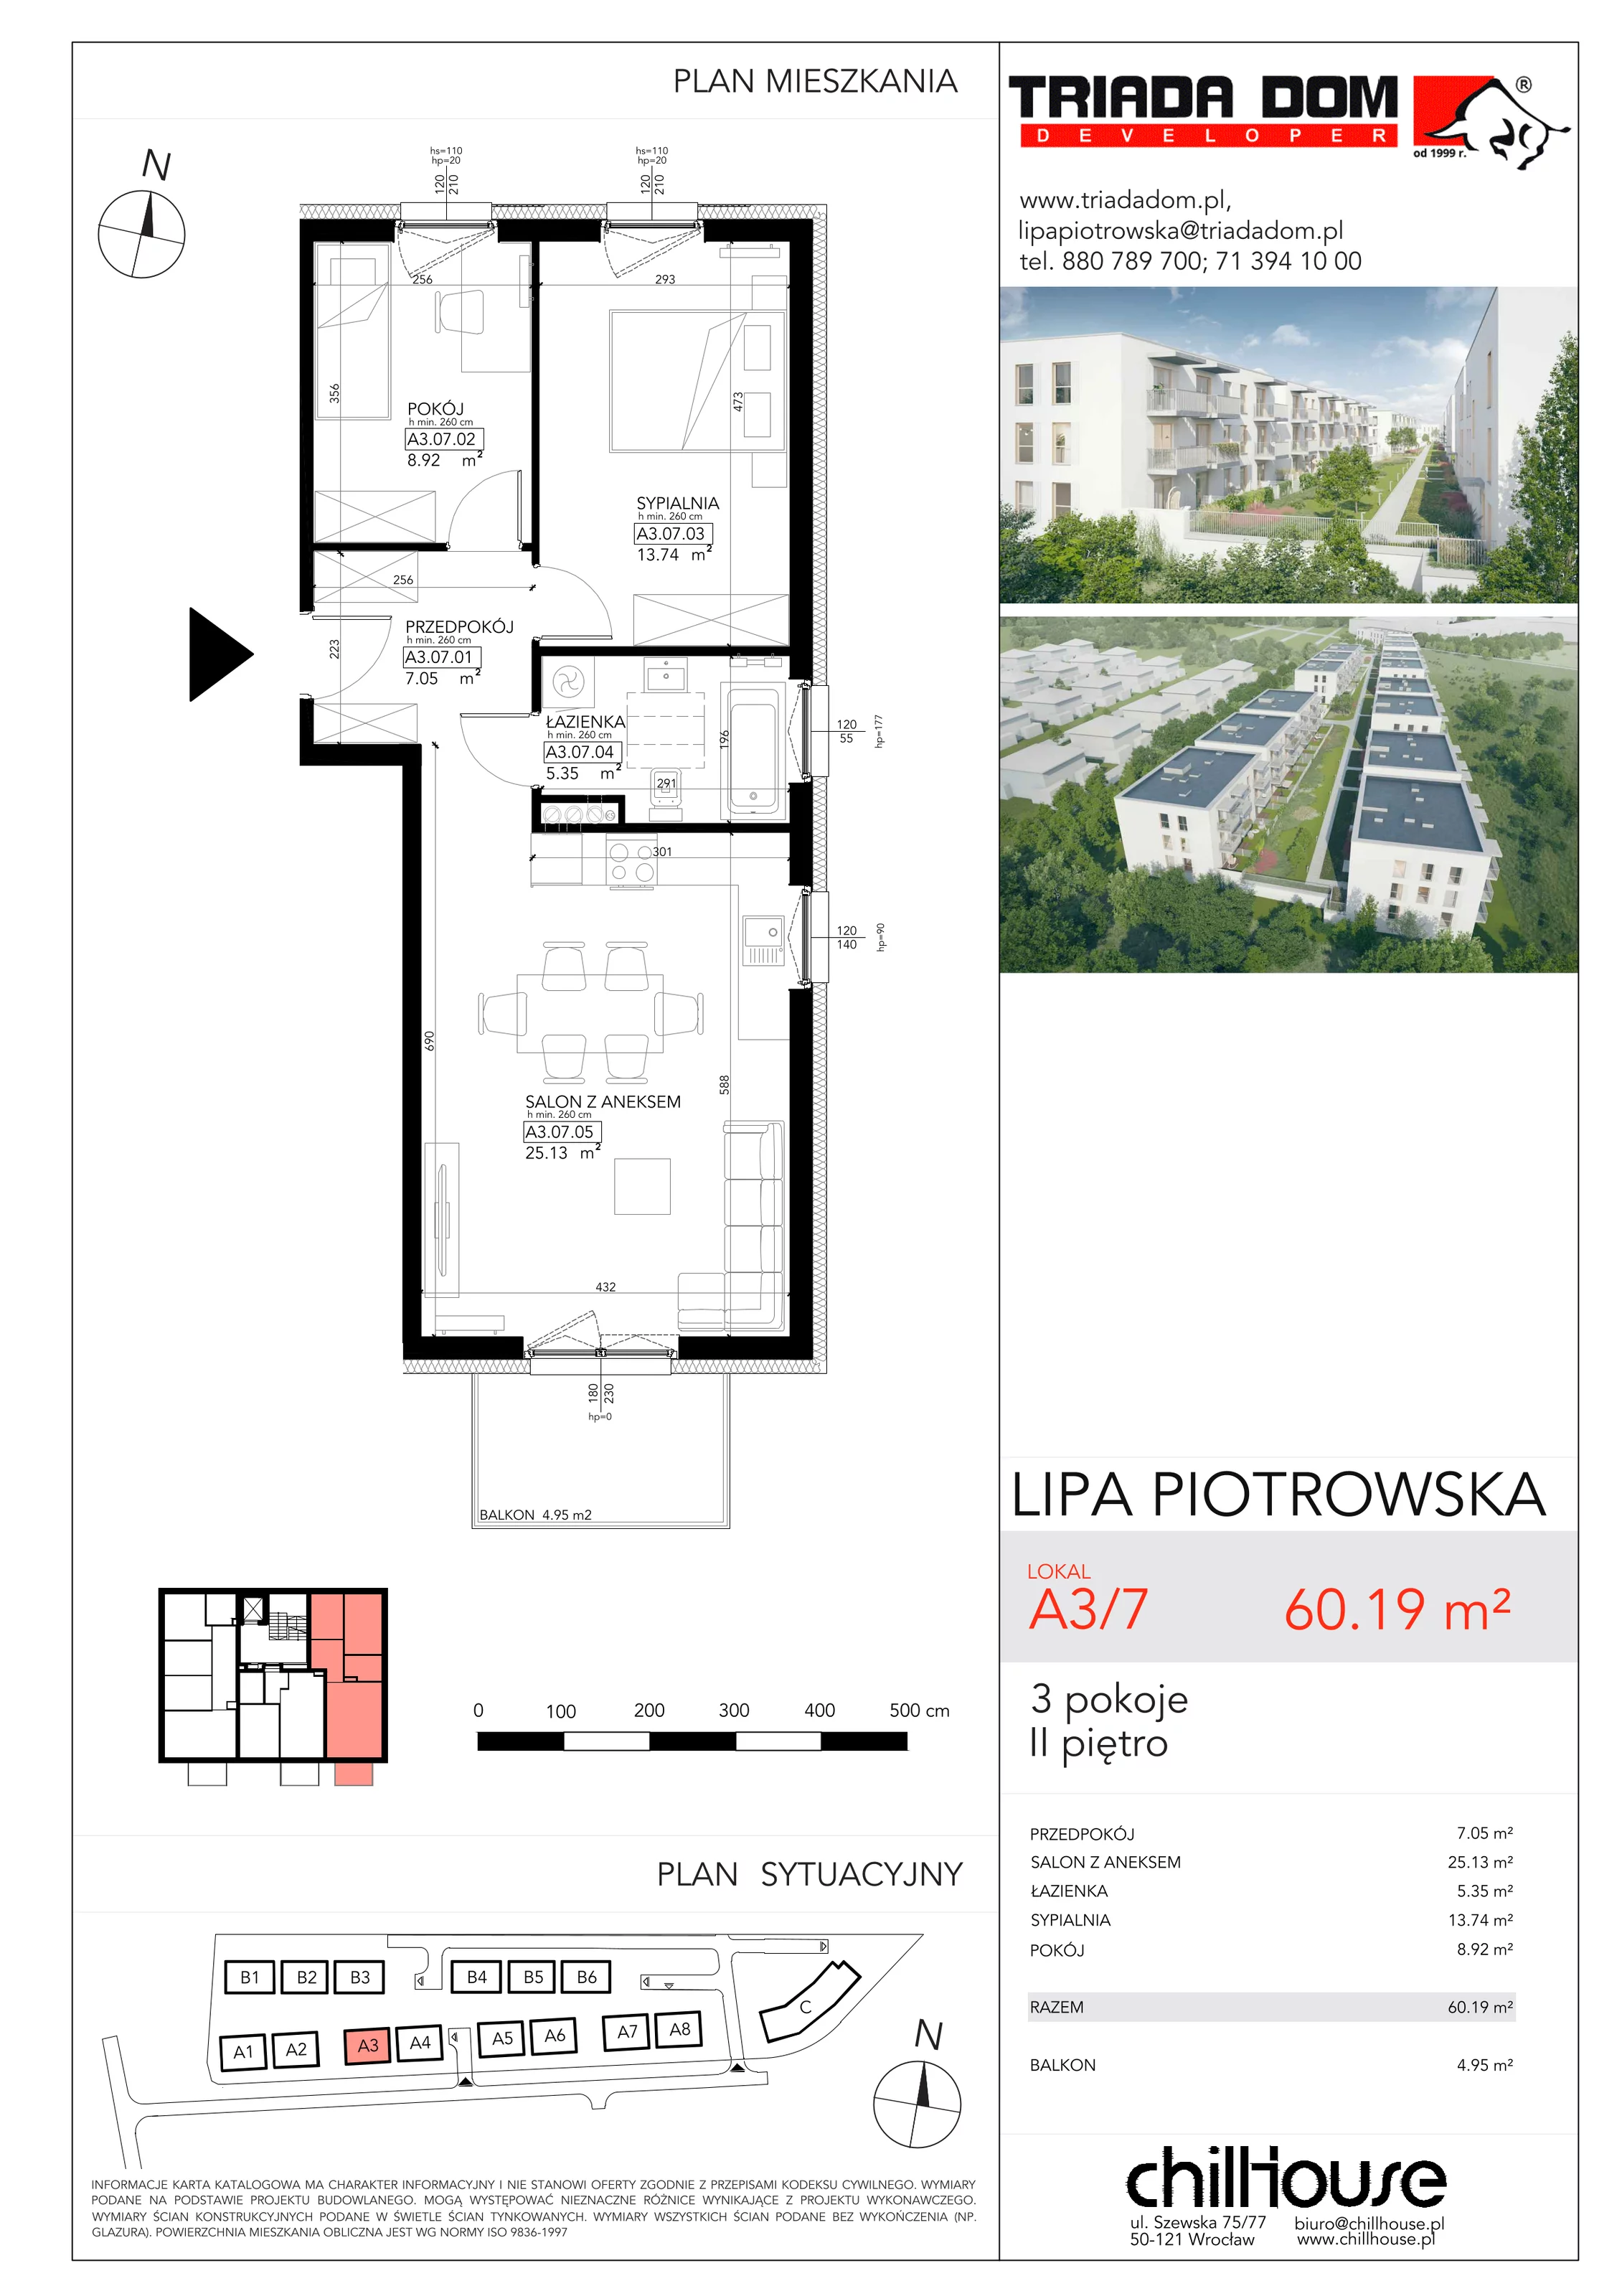 Mieszkanie 60,19 m², piętro 2, oferta nr A37, Lipa Piotrowska, Wrocław, Lipa Piotrowska, ul. Lawendowa / Melisowa